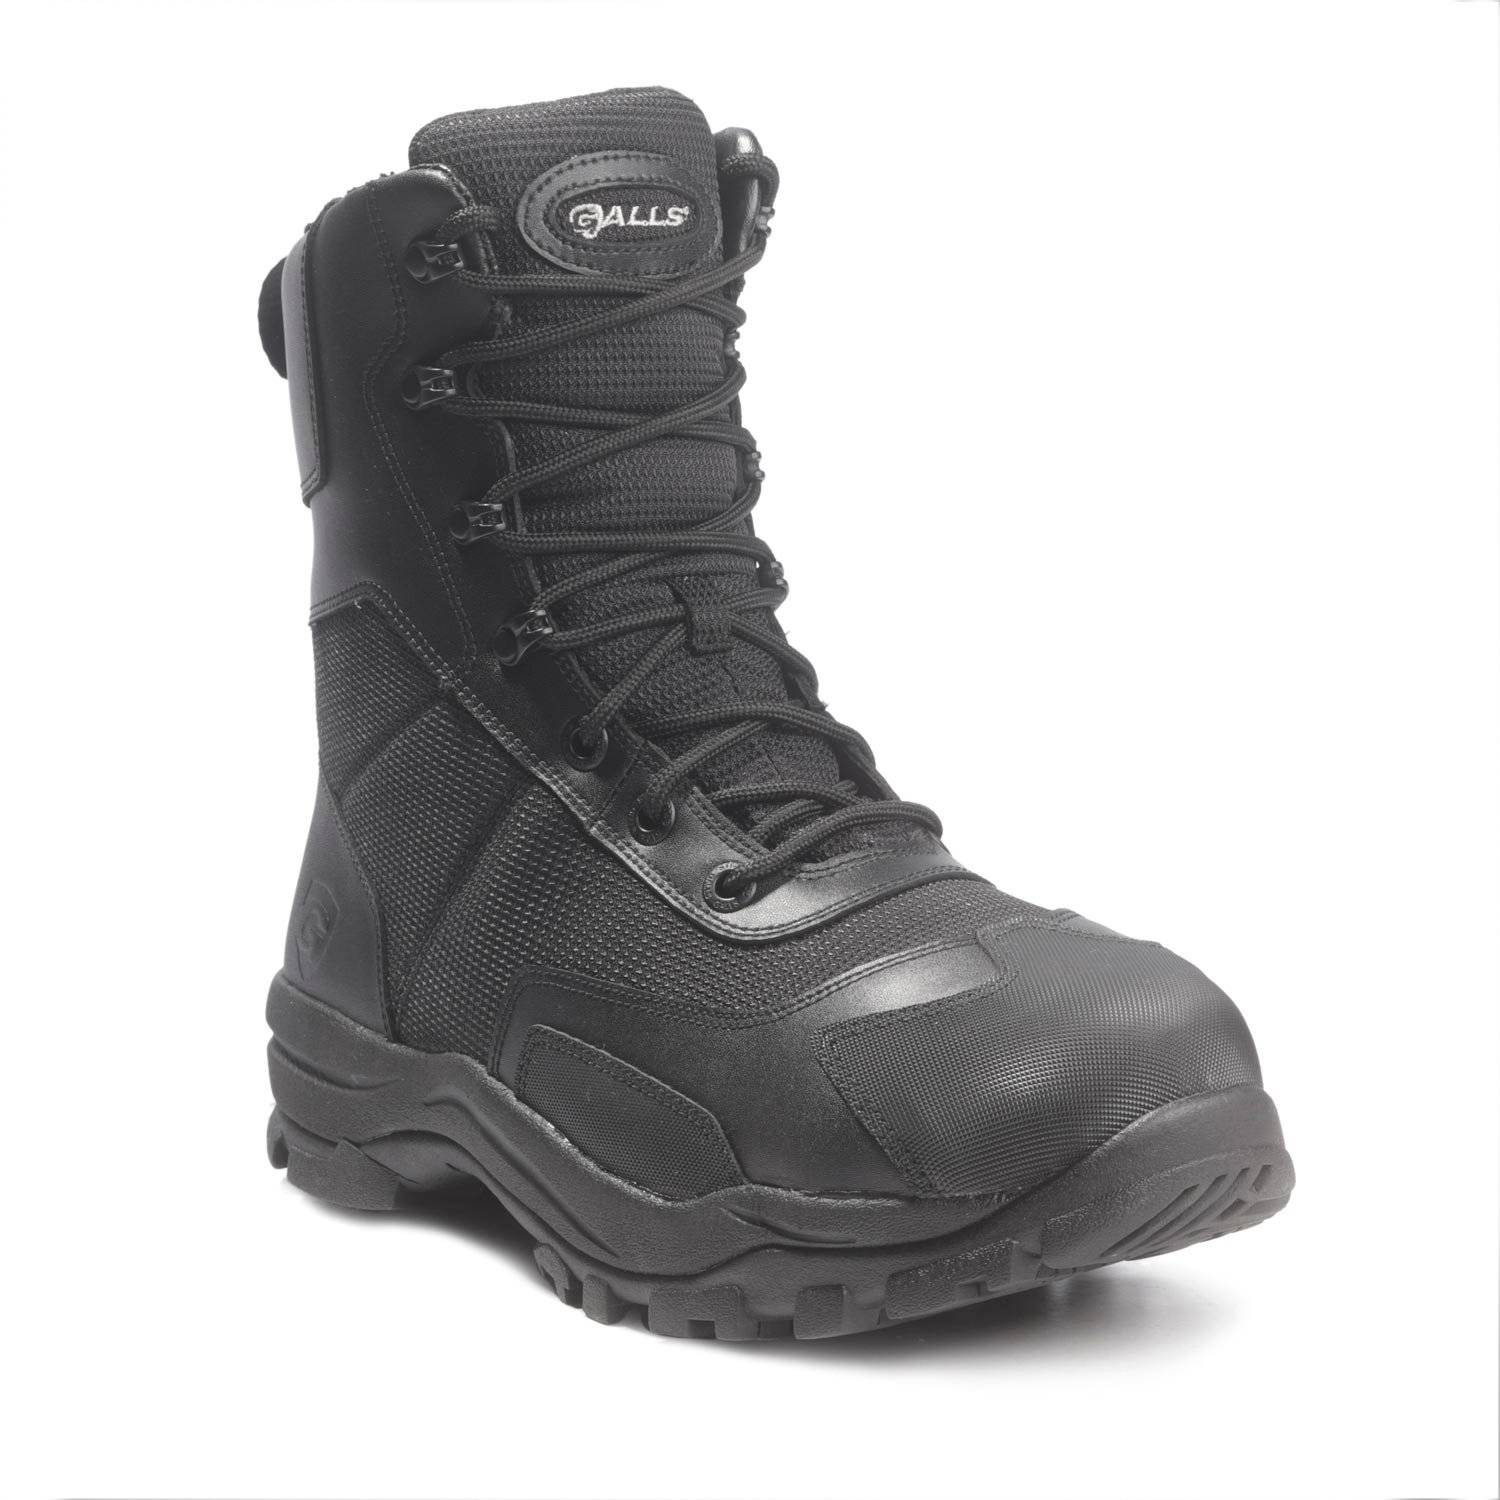 Galls 8" Waterproof Side Zip Composite Toe Boots